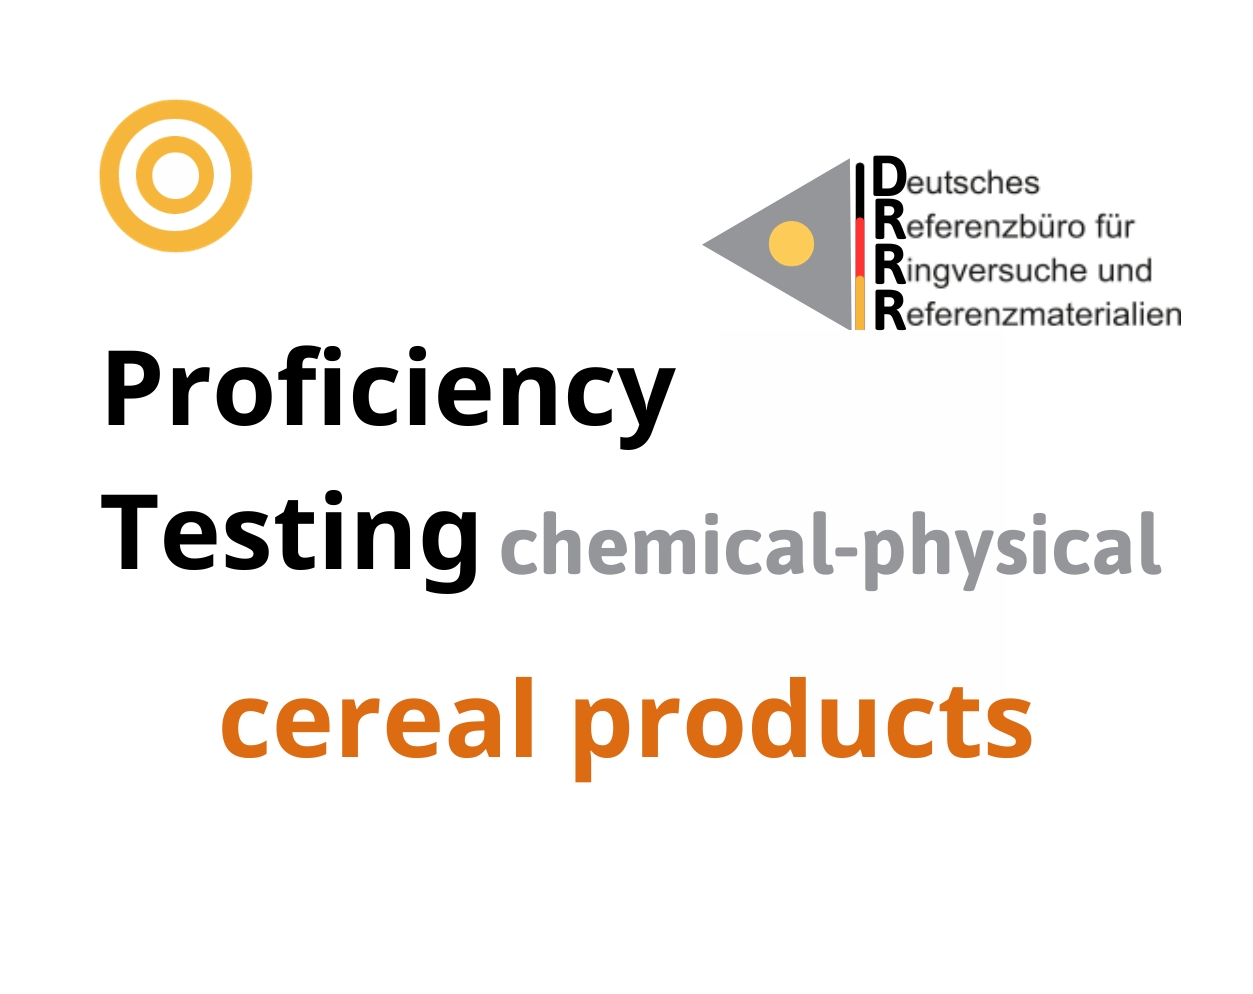 Thử nghiệm thành thạo (ISO 17043) các thông số hoá lý nền mẫu sản phẩm ngũ cốc (cereal products) Hãng DRRR, Đức